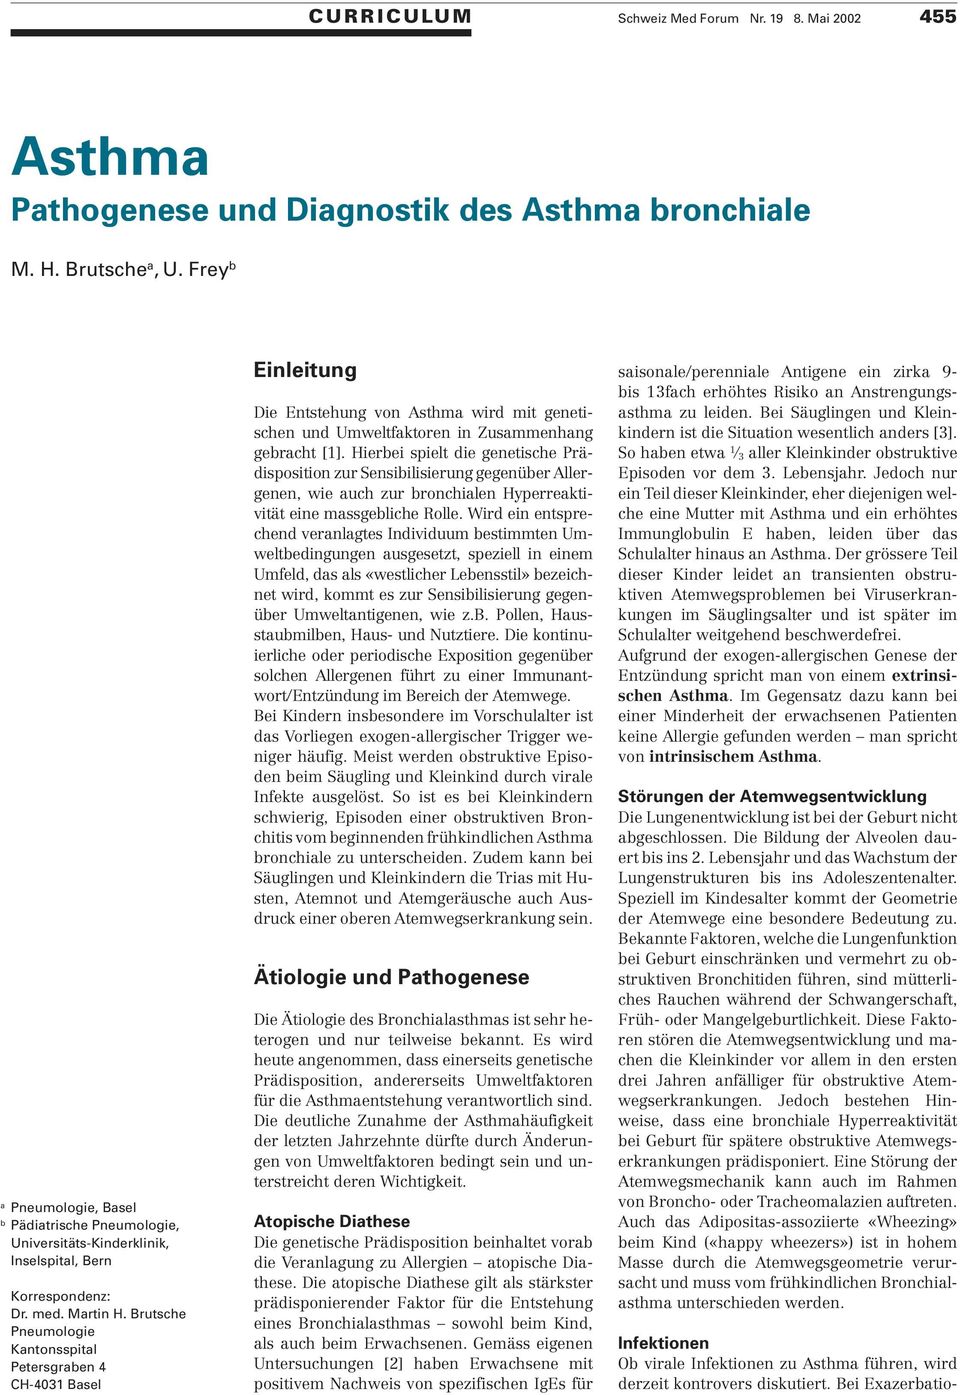 Brutsche Pneumologie Kantonsspital Petersgraben 4 CH-4031 Basel Einleitung Die Entstehung von Asthma wird mit genetischen und Umweltfaktoren in Zusammenhang gebracht [1].